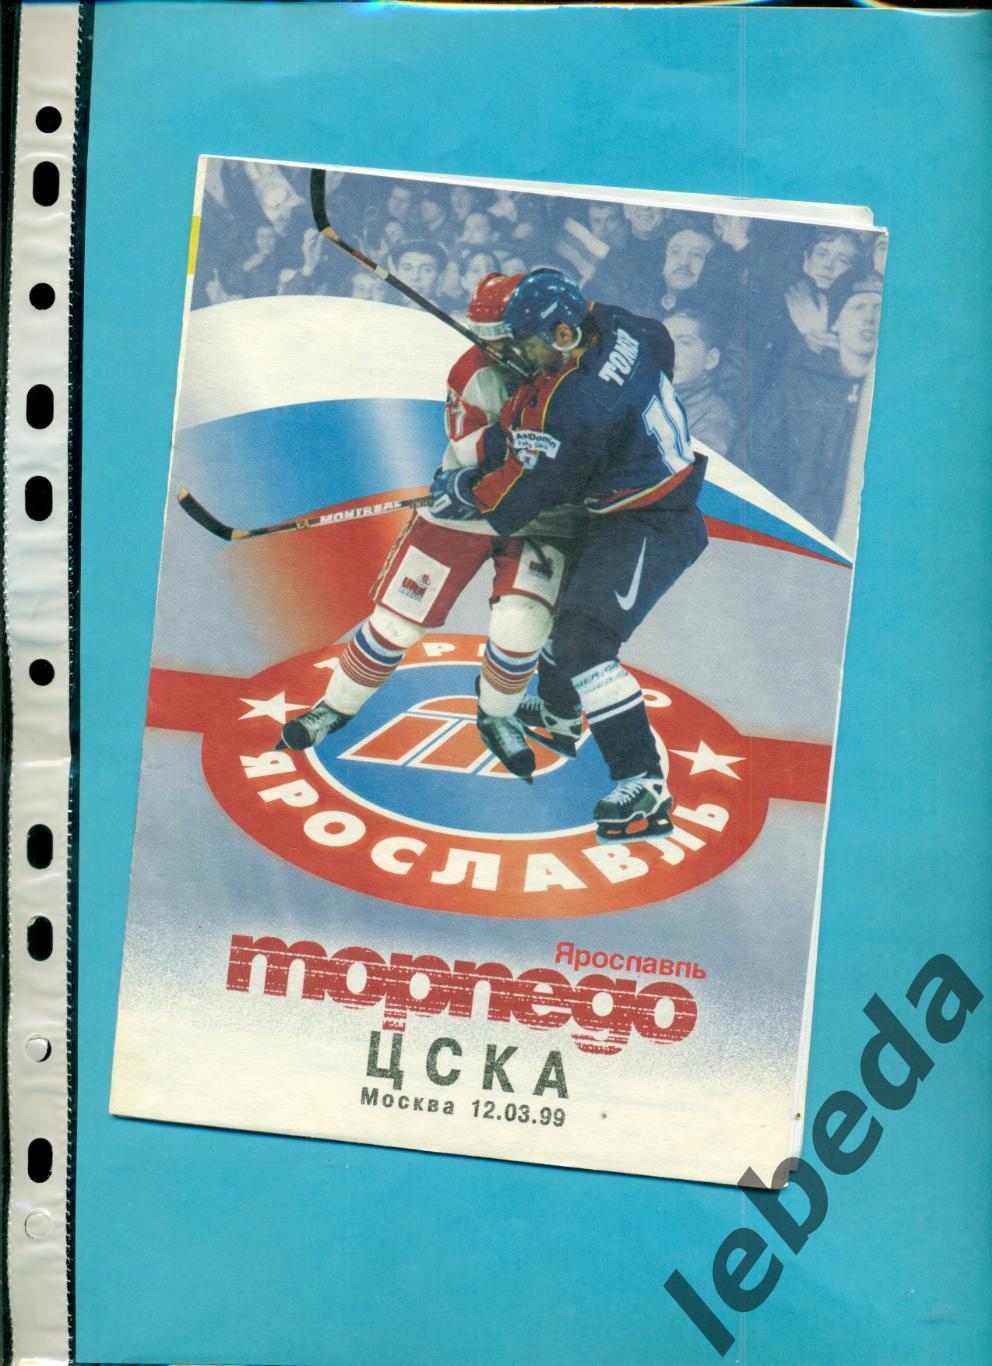 Торпедо Ярославль - ЦСКА - 1998 / 1999 год. (12.03.99.) Плей-офф 2-й матч 1/8.